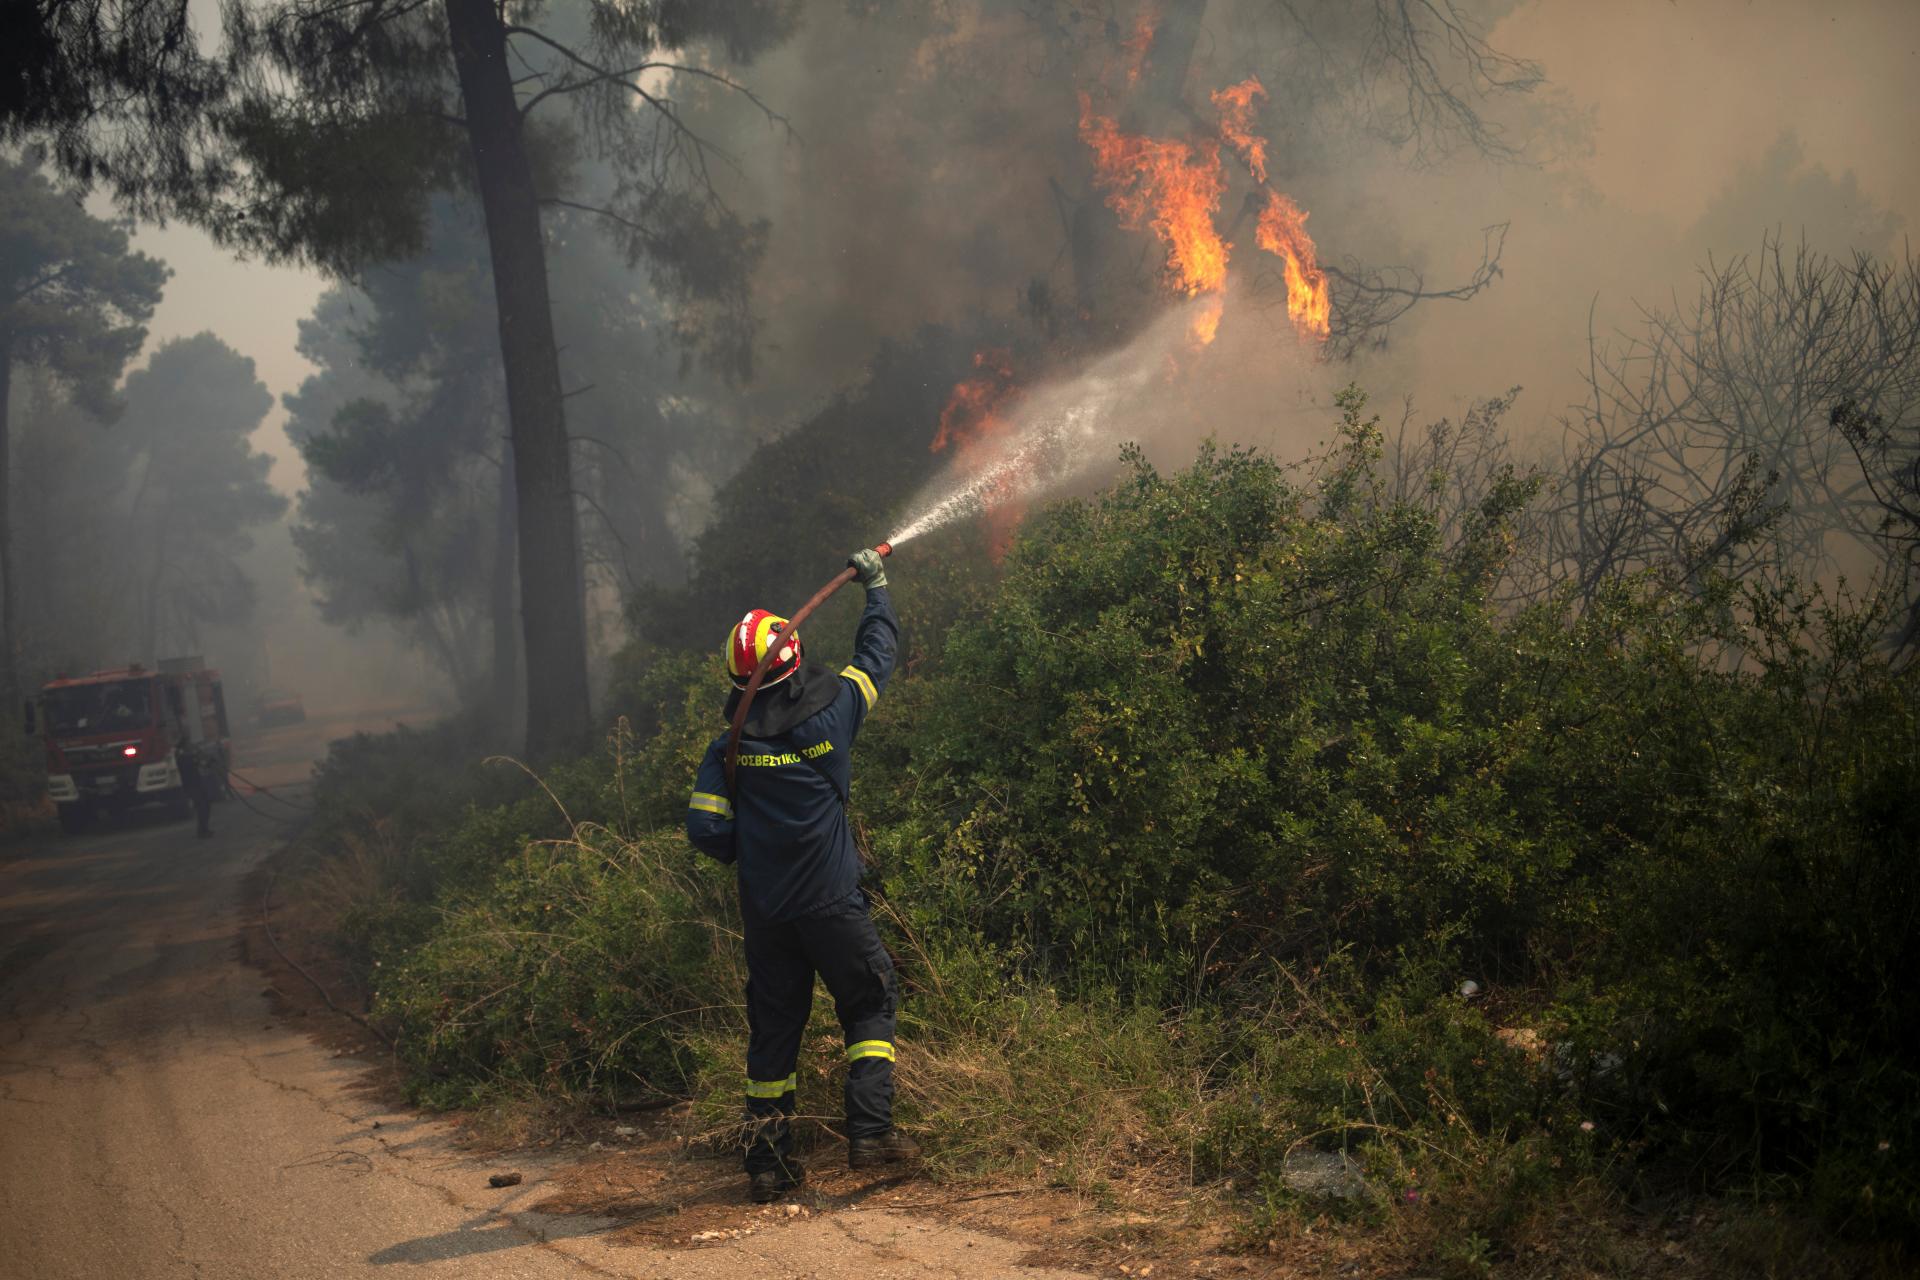 Vyhnazl z domovov desiatky ľudí. Grécki hasiči dnes dostali pod kontrolu lesný požiar na ostrove Kréta